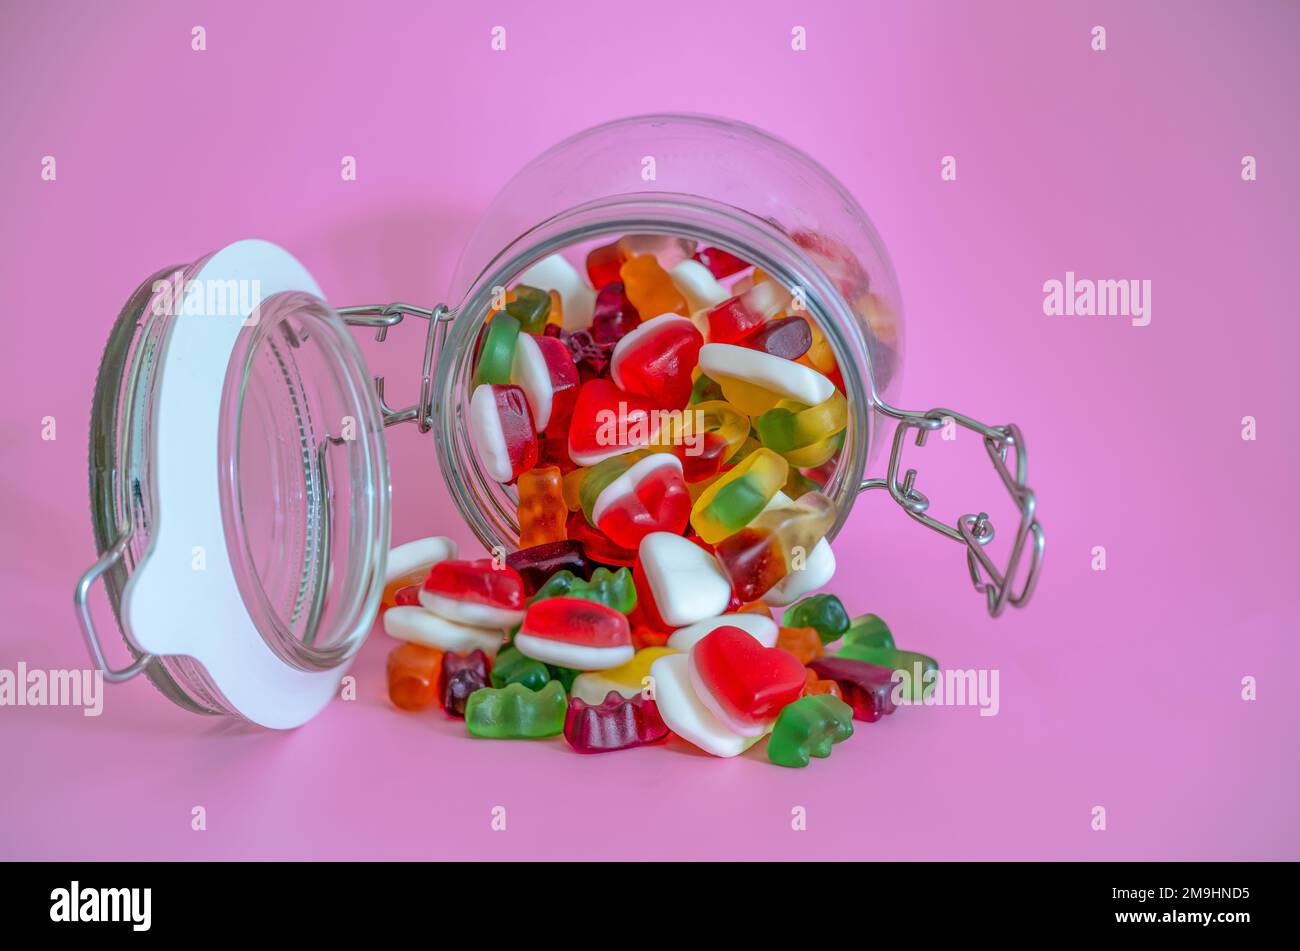 Offenes, luftdichtes Süßigkeitenglas, dessen Inhalt auf den pinkfarbenen Hintergrund ausläuft, isoliert Stockfoto